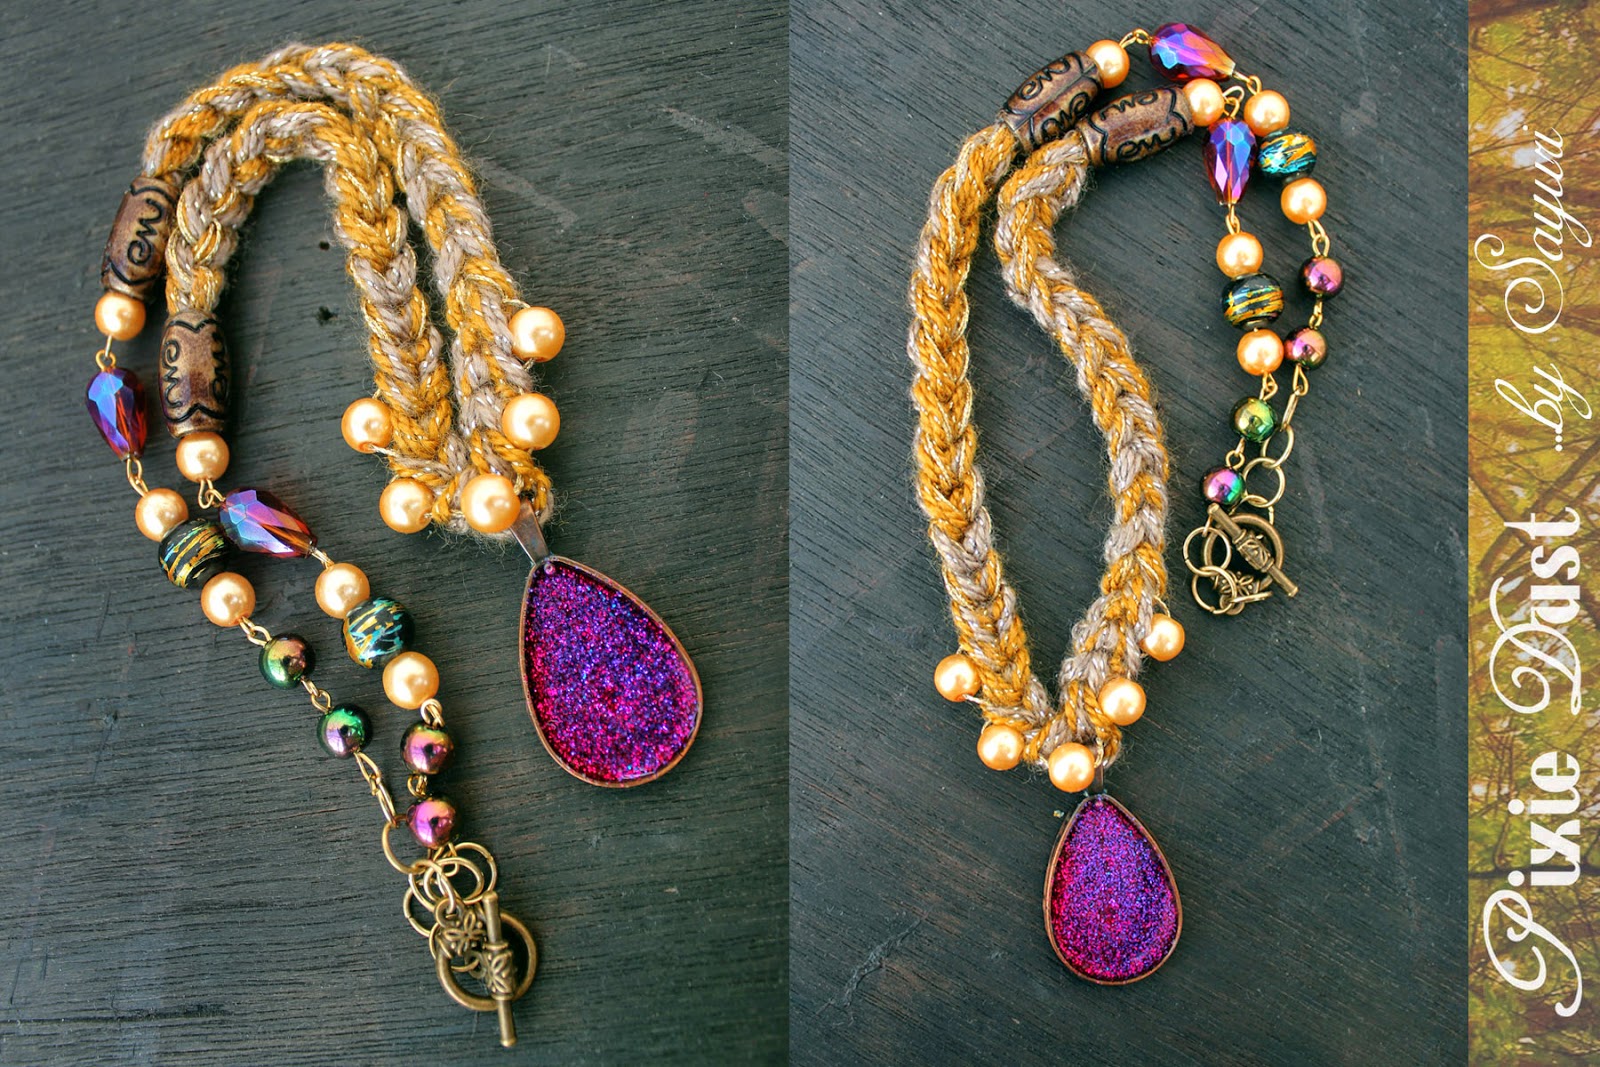 Pixie Dust Bohemian Jewelry by sayuri